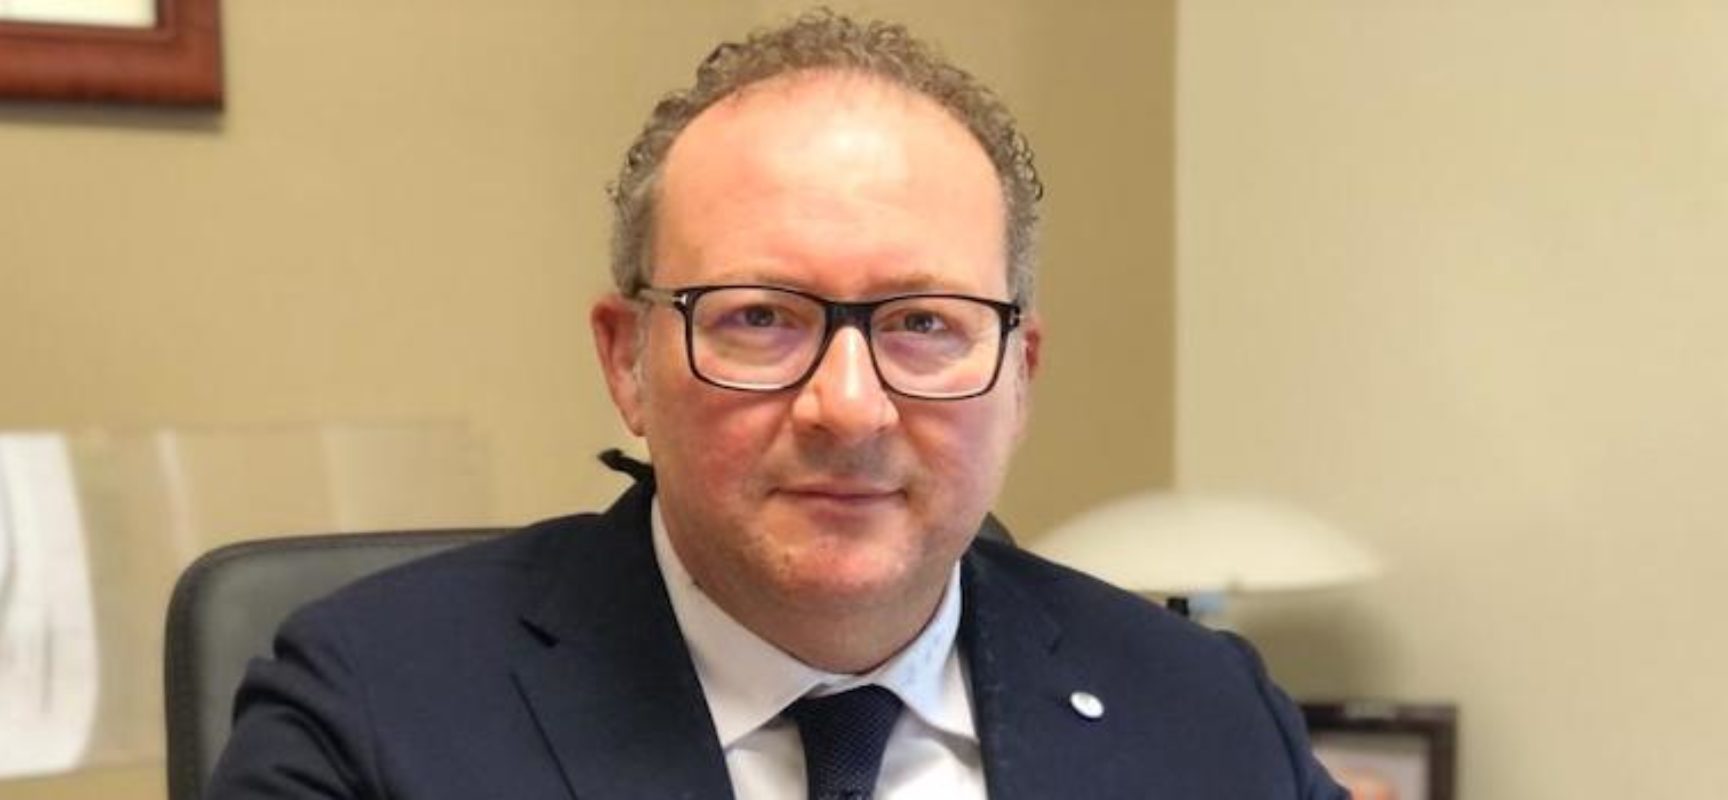 Francesco La Notte rimane in Consiglio Regionale: arriva la decisione del Tar